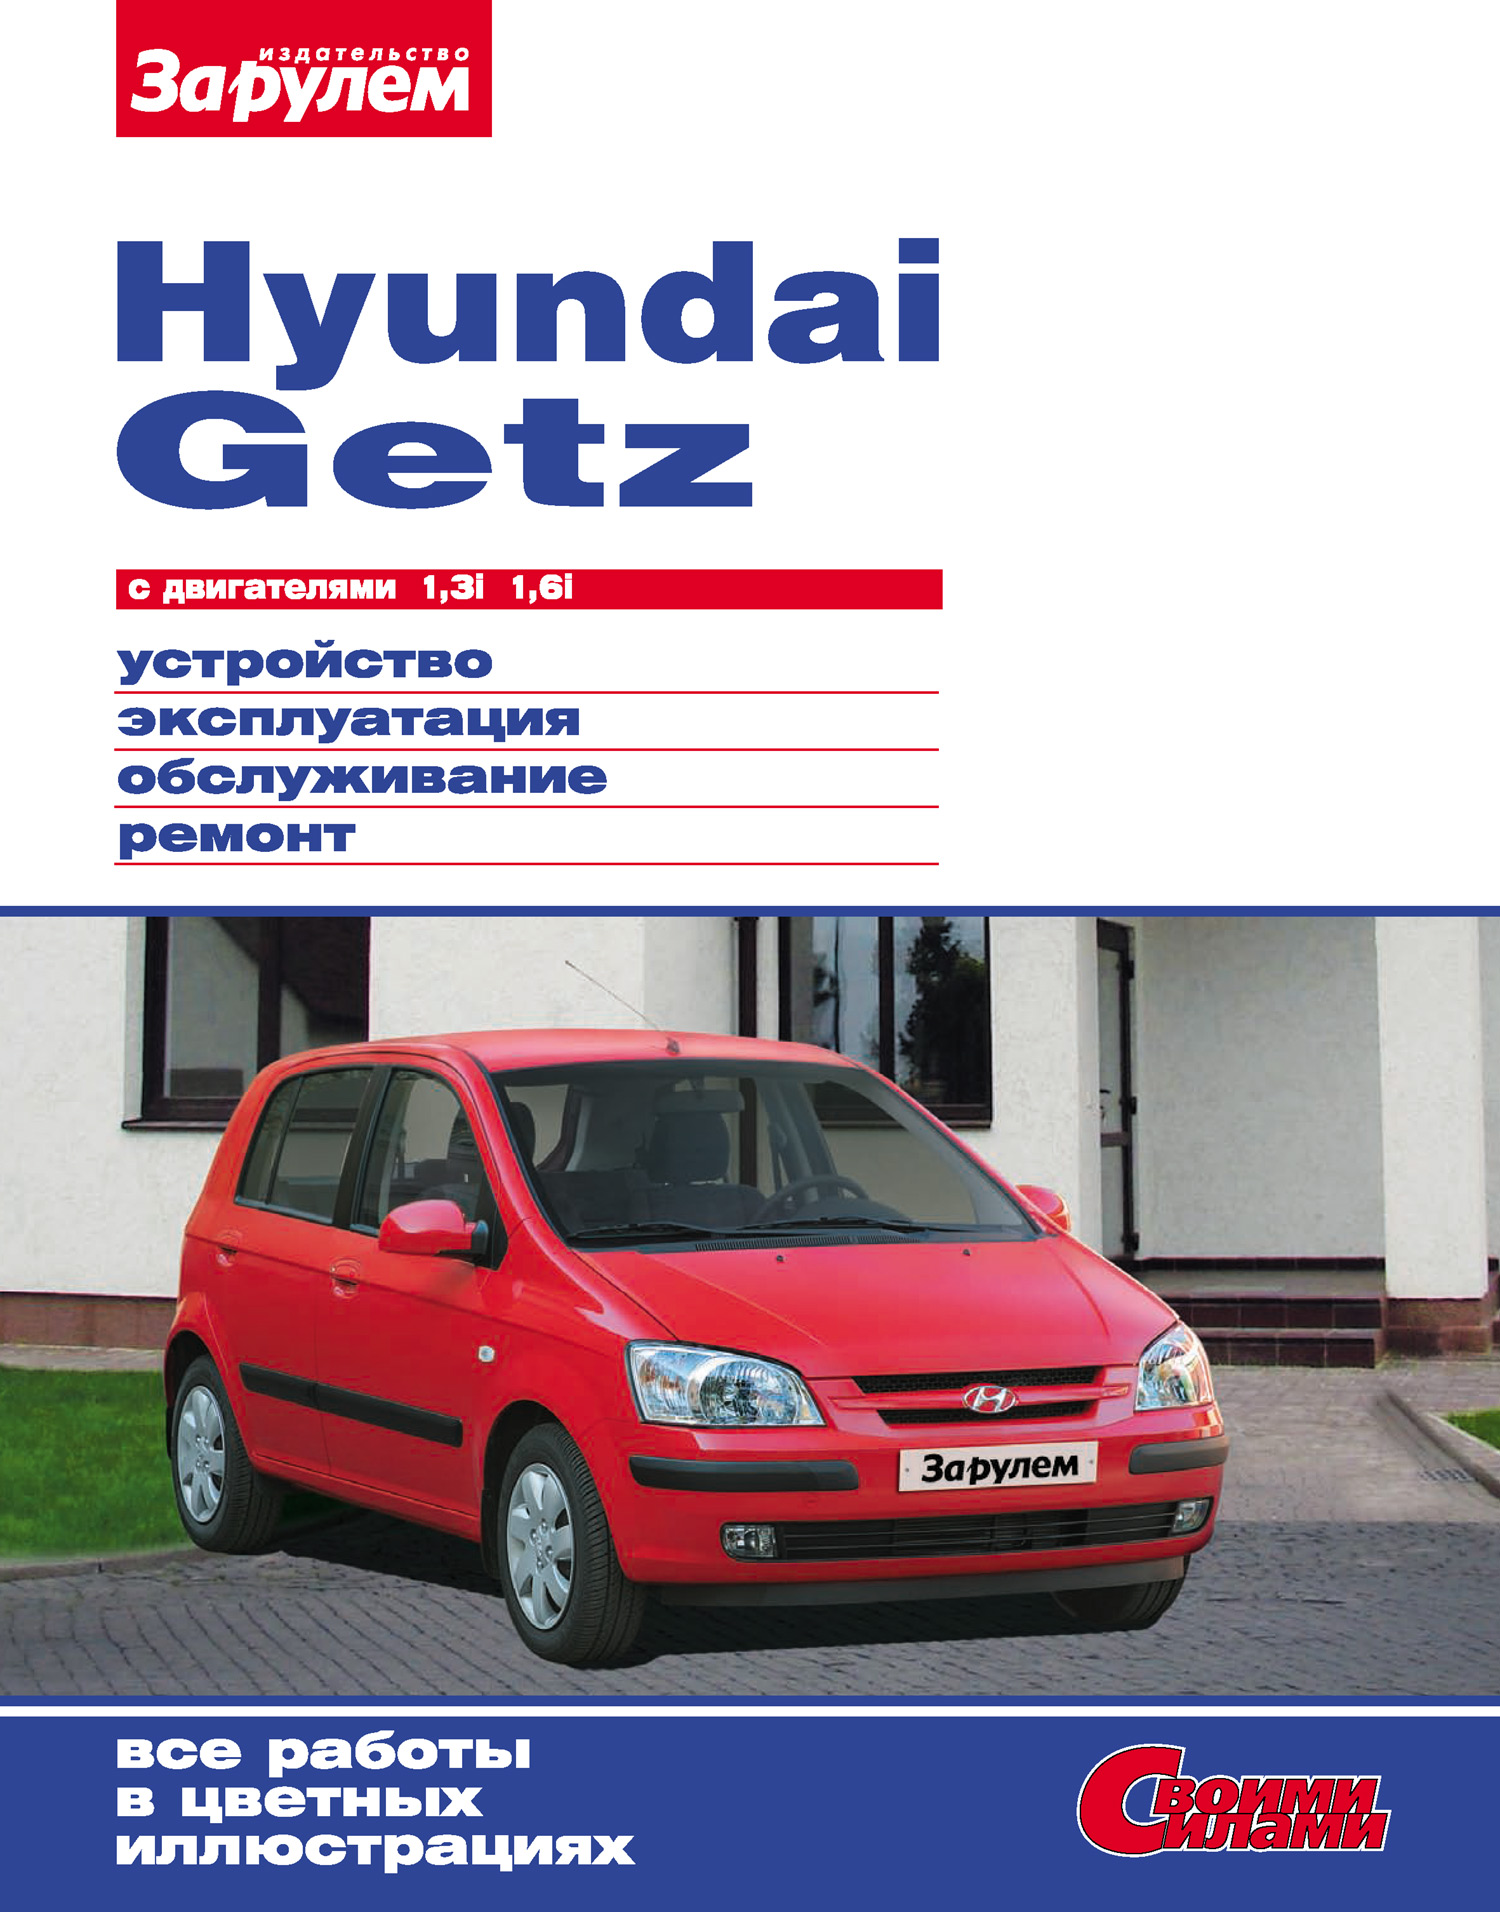 Hyundai Getzс двигателями 1,3i 1,6i. Устройство, эксплуатация, обслуживание, ремонт: Иллюстрированное руководство